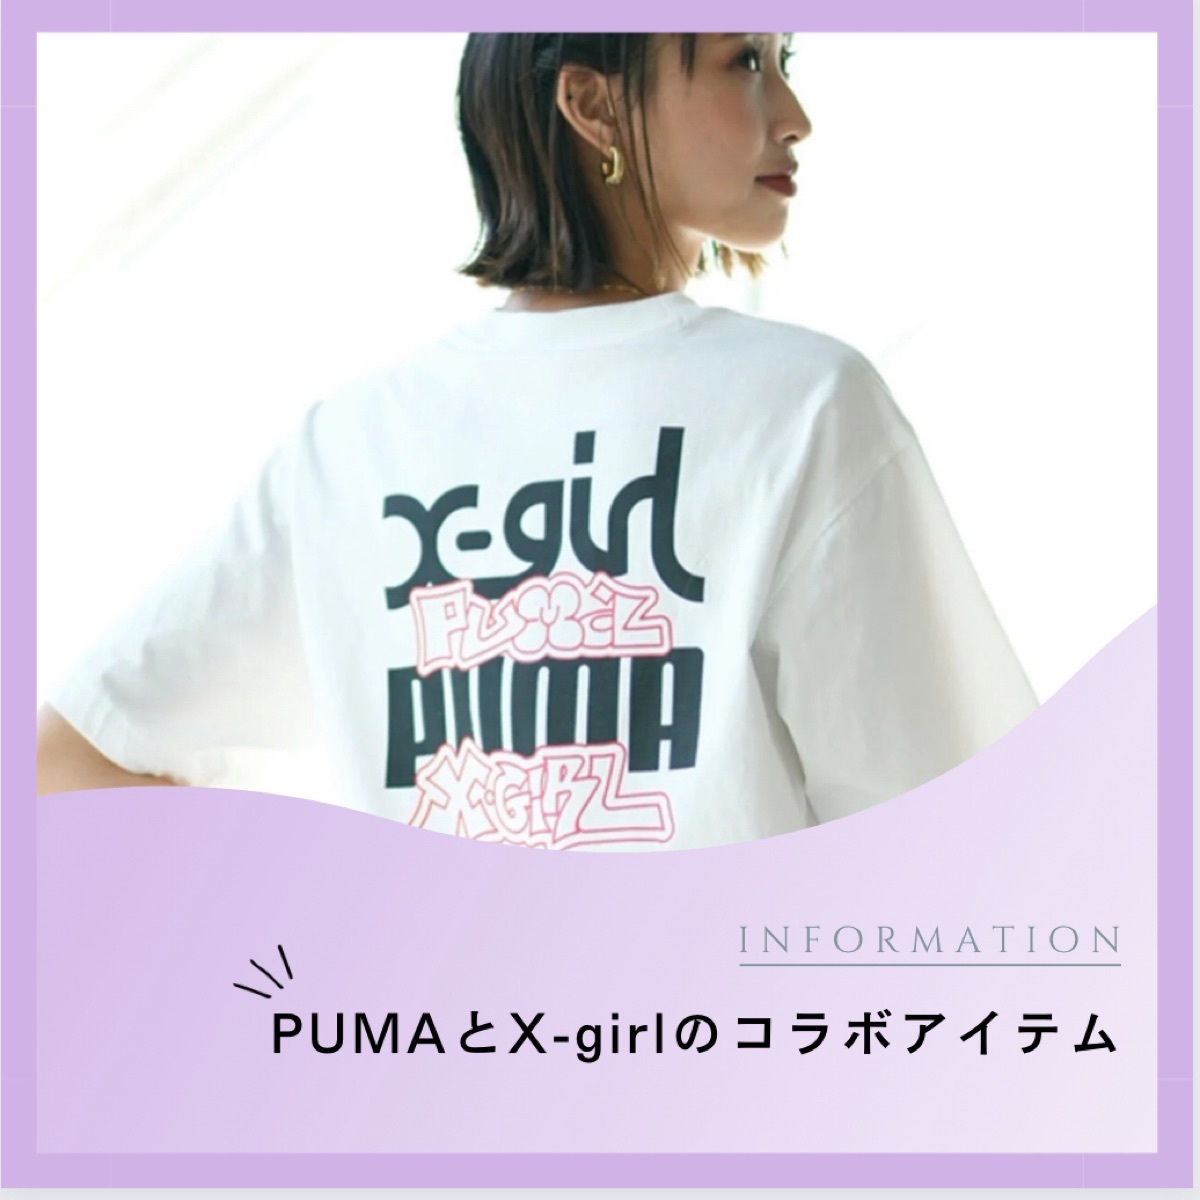 PUMA X-girl